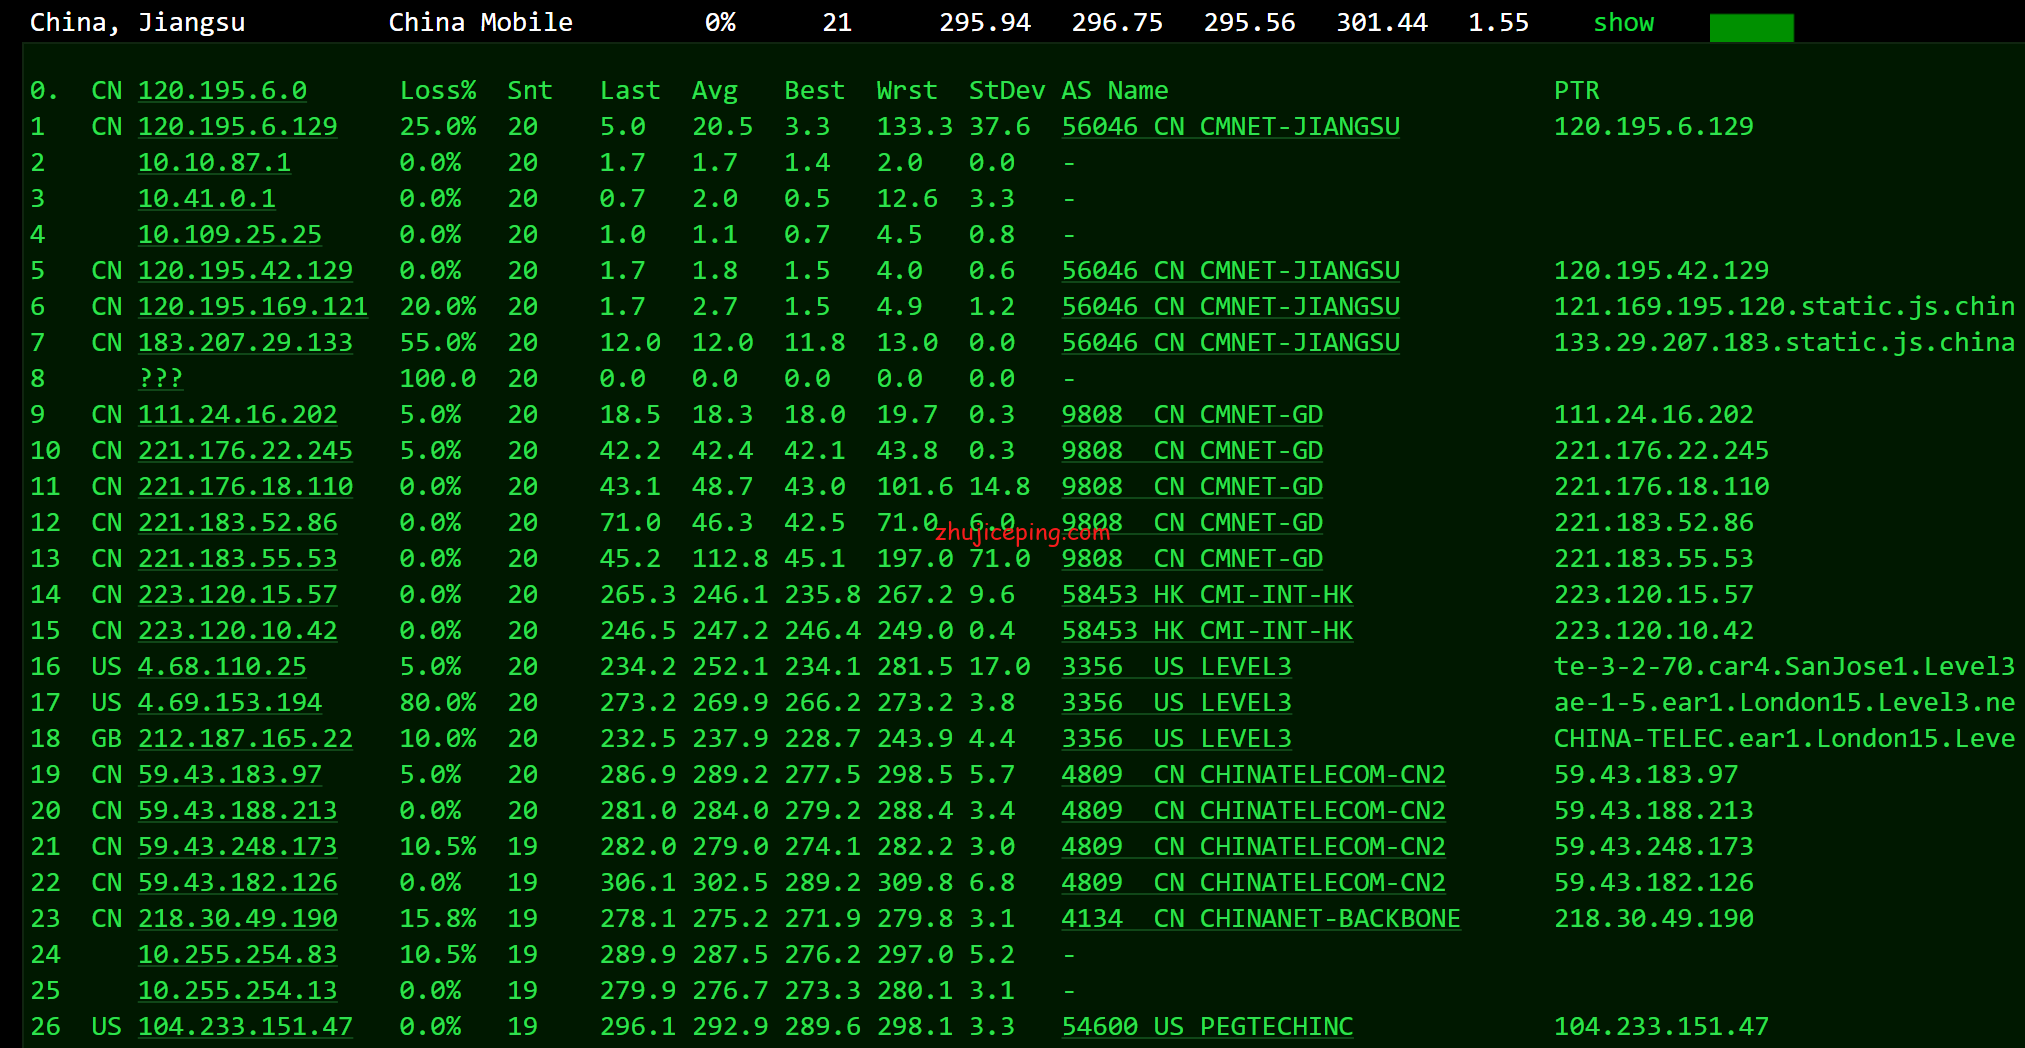 raksmart：三网CN2 GIA线路“云服务器”简单测评，自带一个快照2个备份